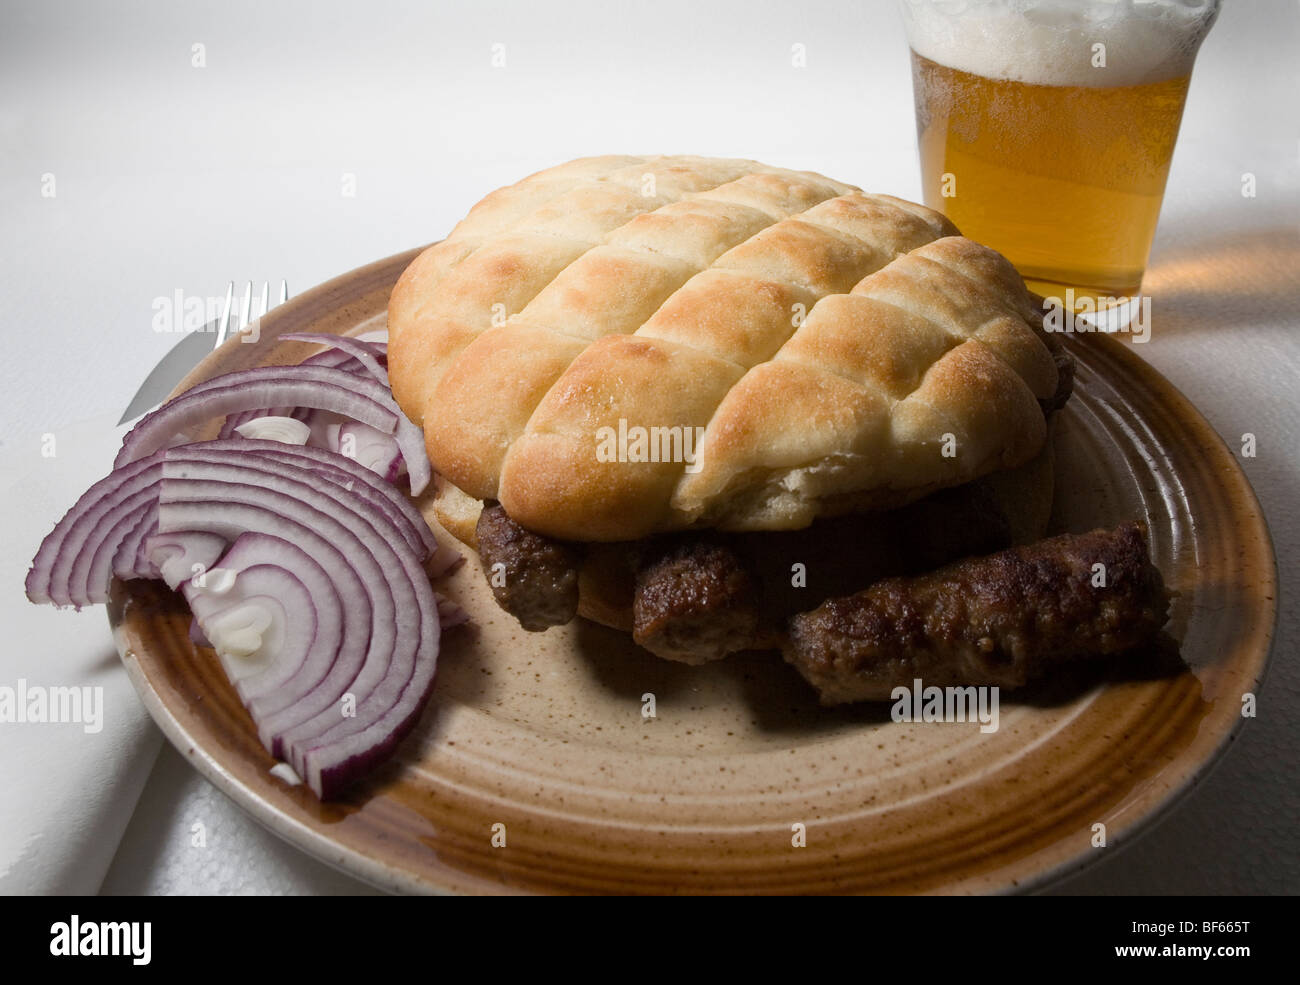 Cevapcici. Bosnisch-Fast-Food. Gegrilltes Fleisch rollt in Somun Brot einfach mit Zwiebeln serviert, oft begleitet mit Bier. Stockfoto